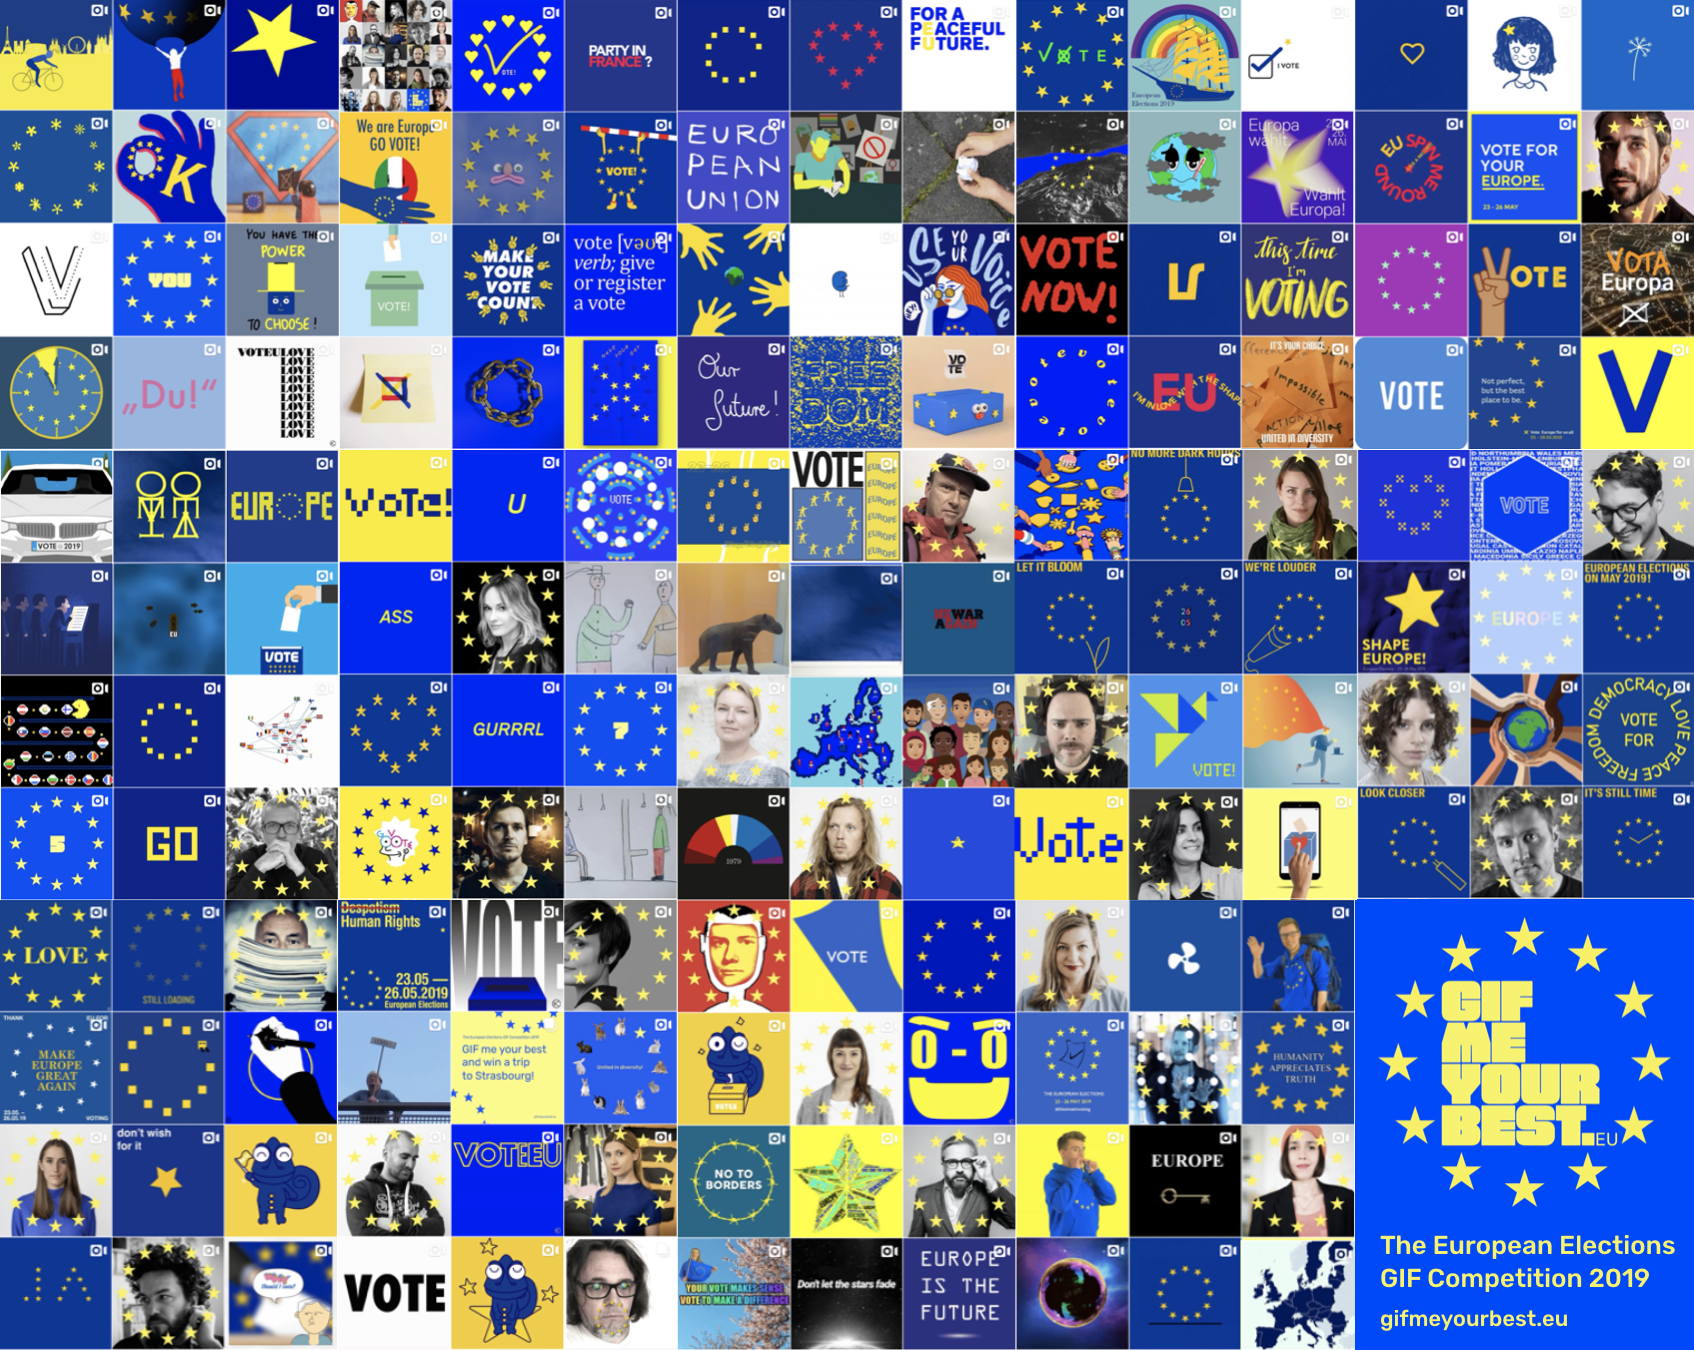 GIF ME YOUR BEST - Über 150 GIF Einreichungen beim ersten #EUROPEANELECTION Wettbewerb und eine 26-köpfige Jury aus ganz Europa